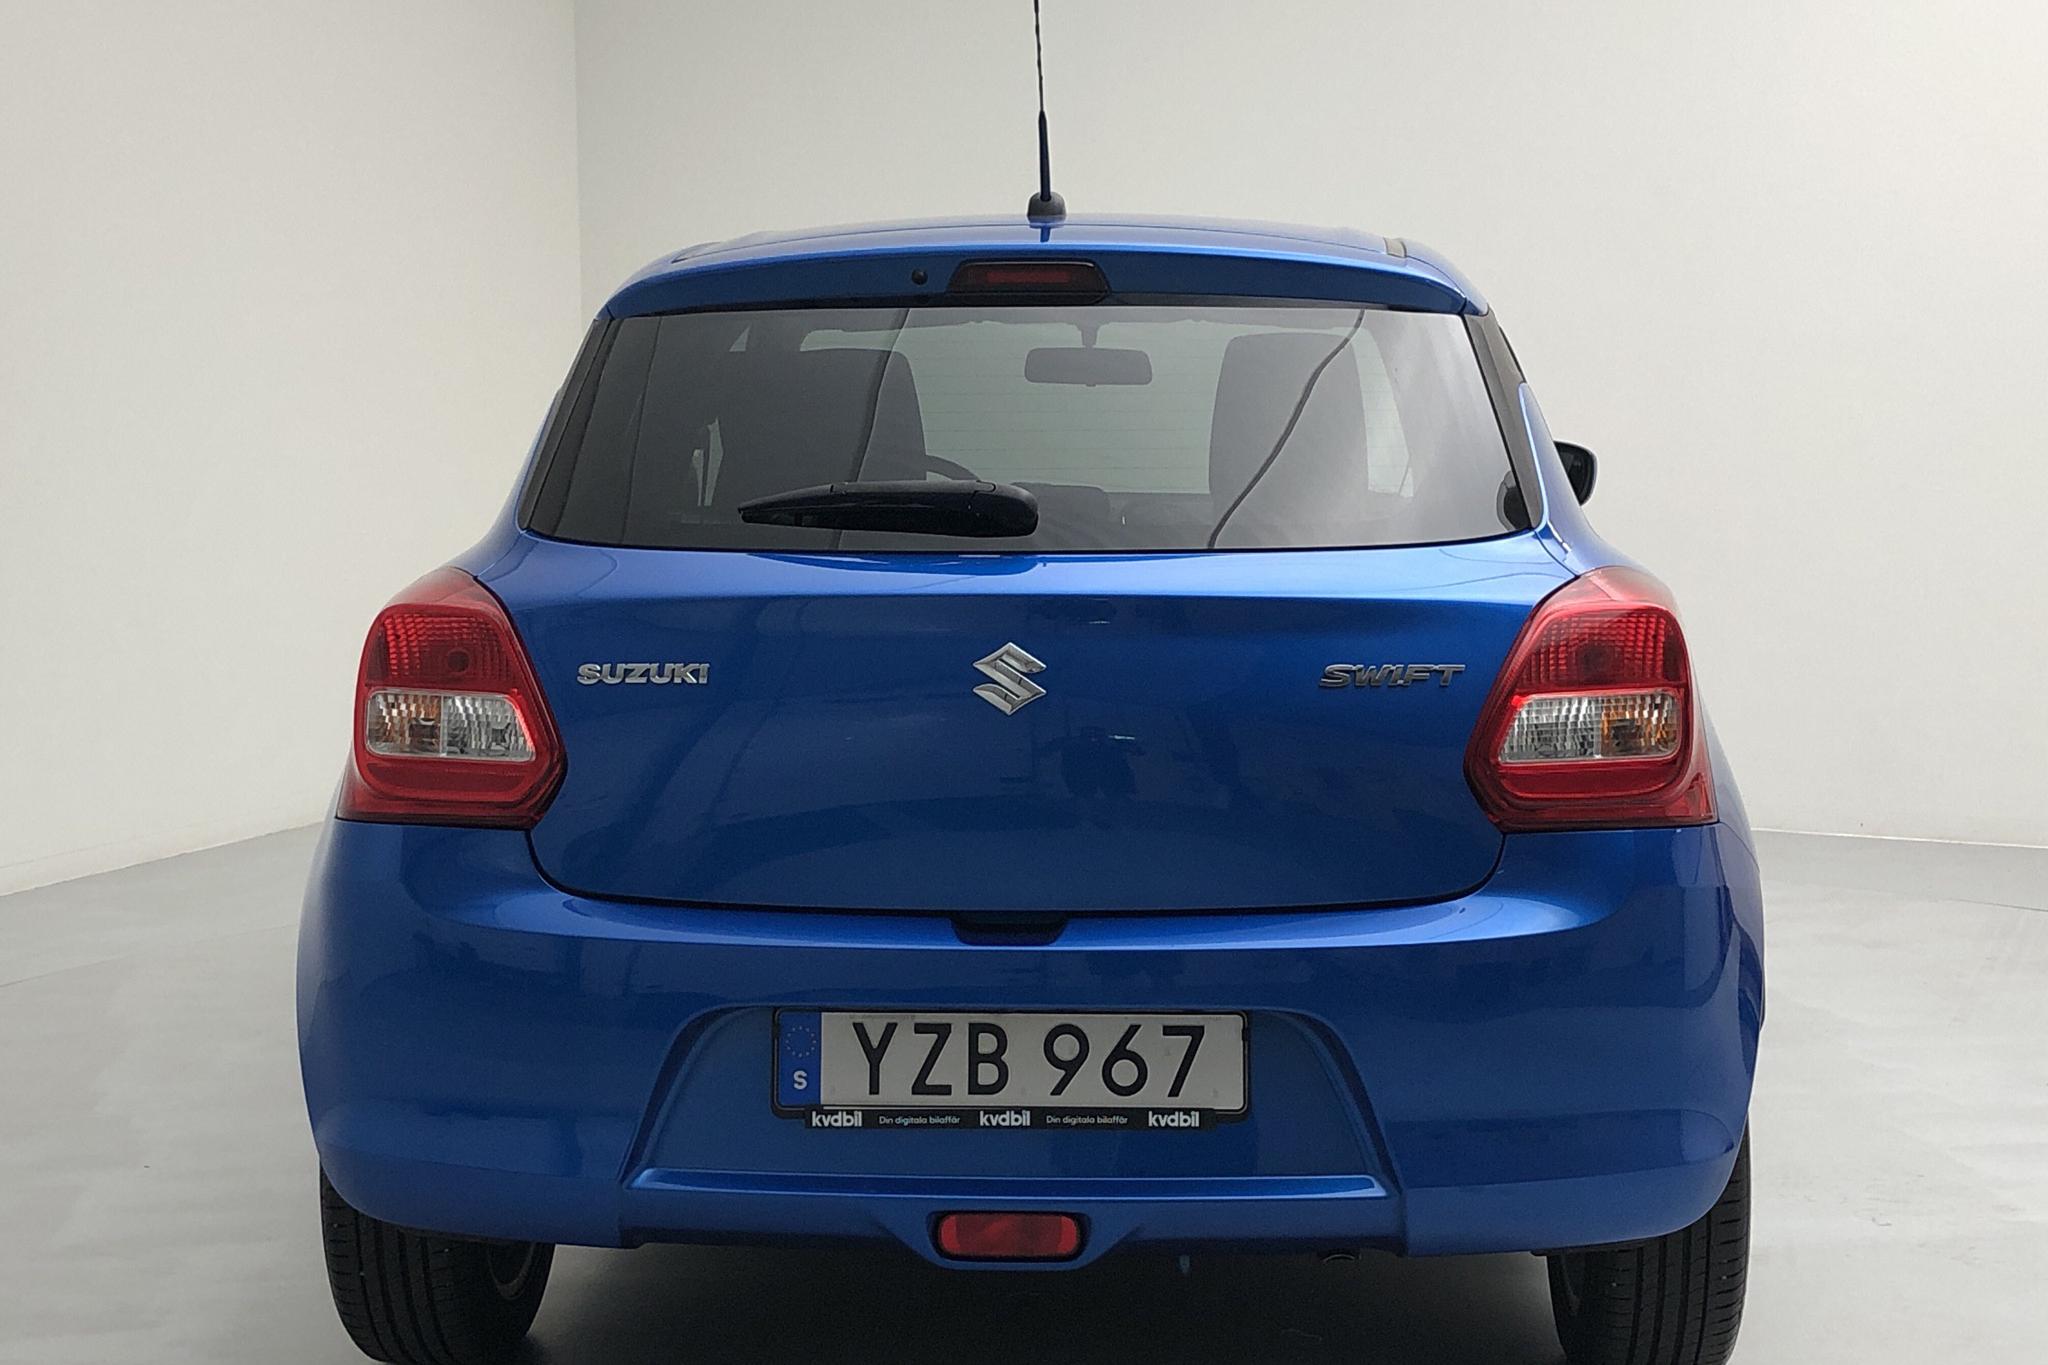 Suzuki Swift 1.2 5dr (90hk) - 62 520 km - Manual - blue - 2018